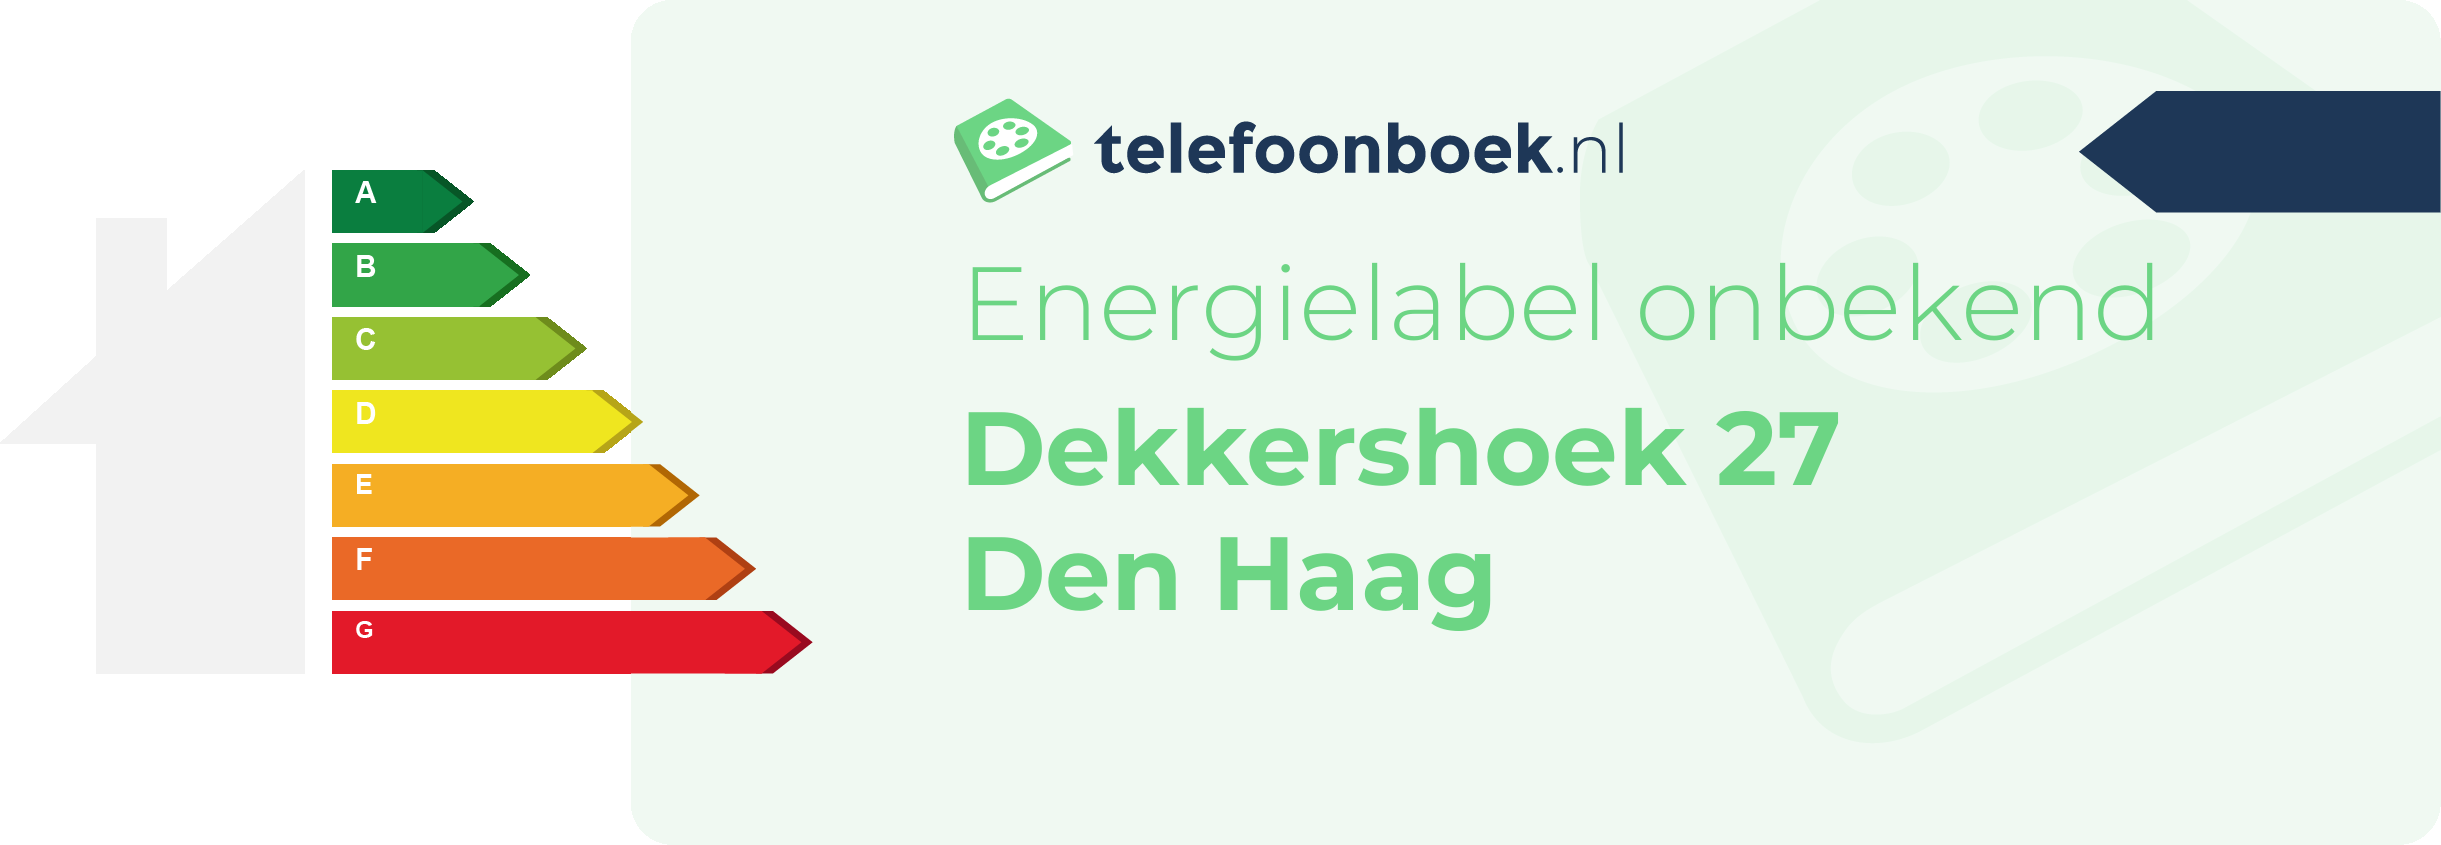 Energielabel Dekkershoek 27 Den Haag